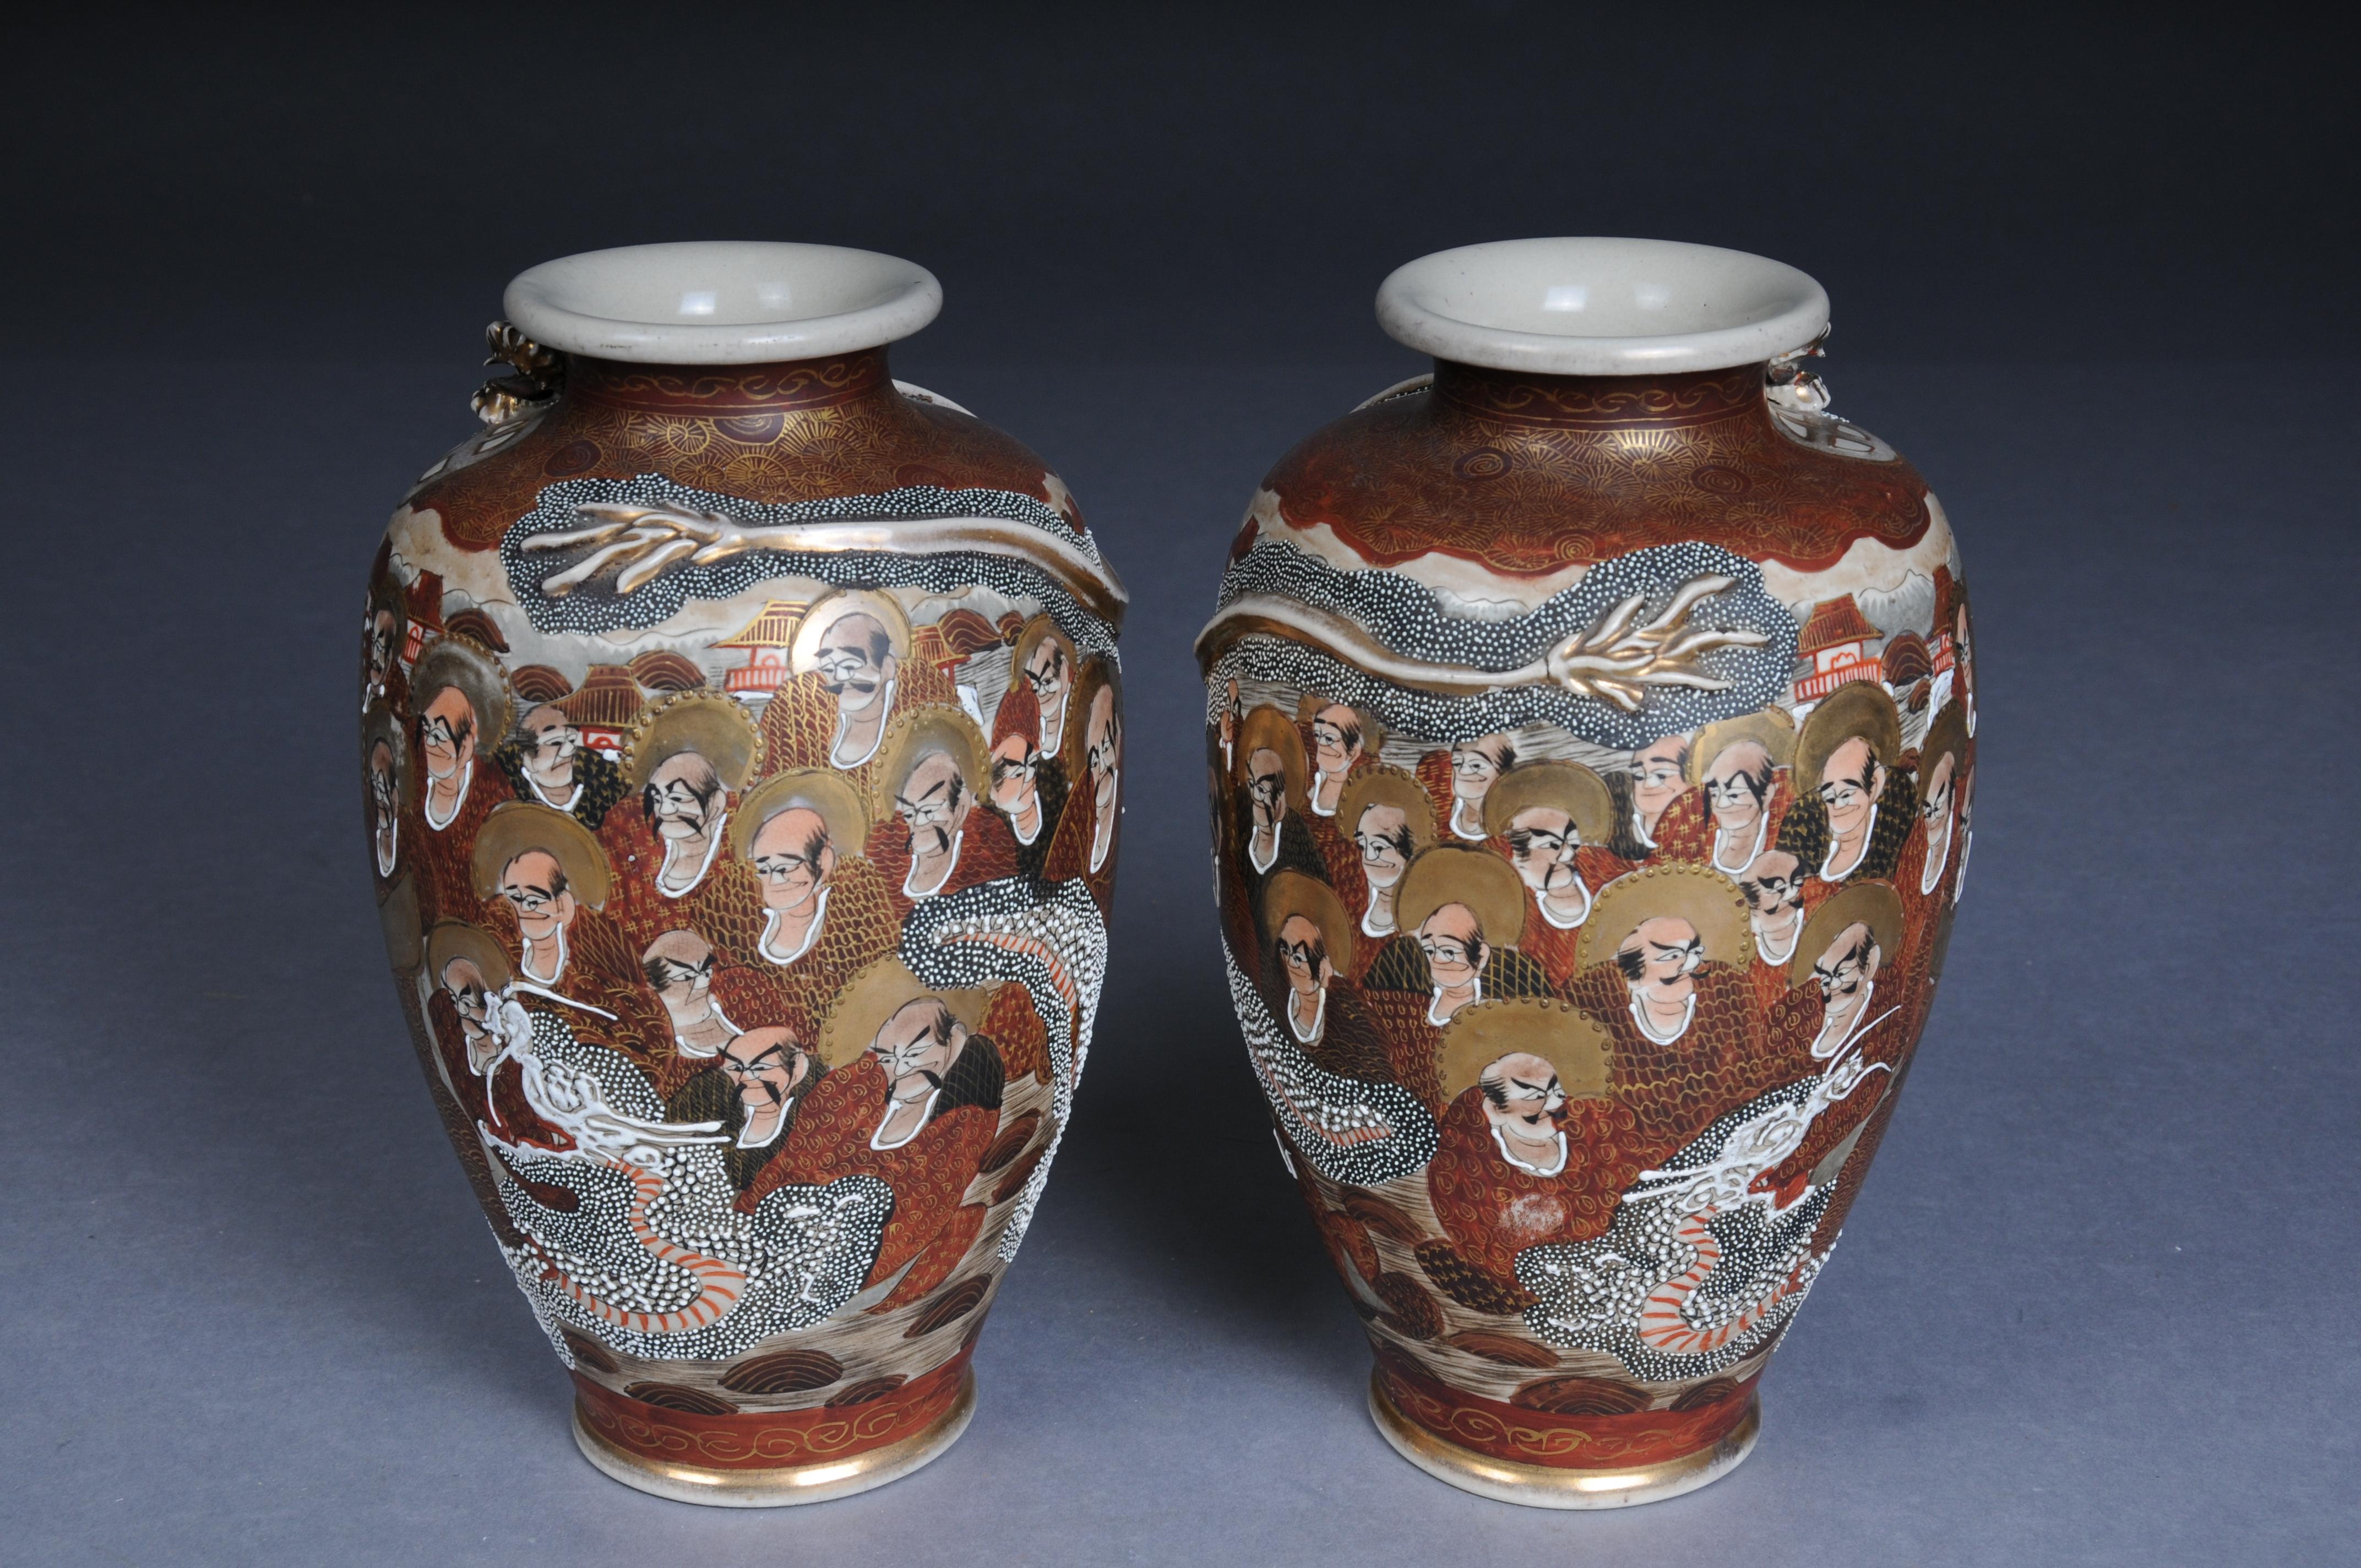 2 Japanese Satsuma Vase, CHOSHUZAN, Japanese Satsuma Pottery, Meiji period

2 old, Japanese Satsuma vases,